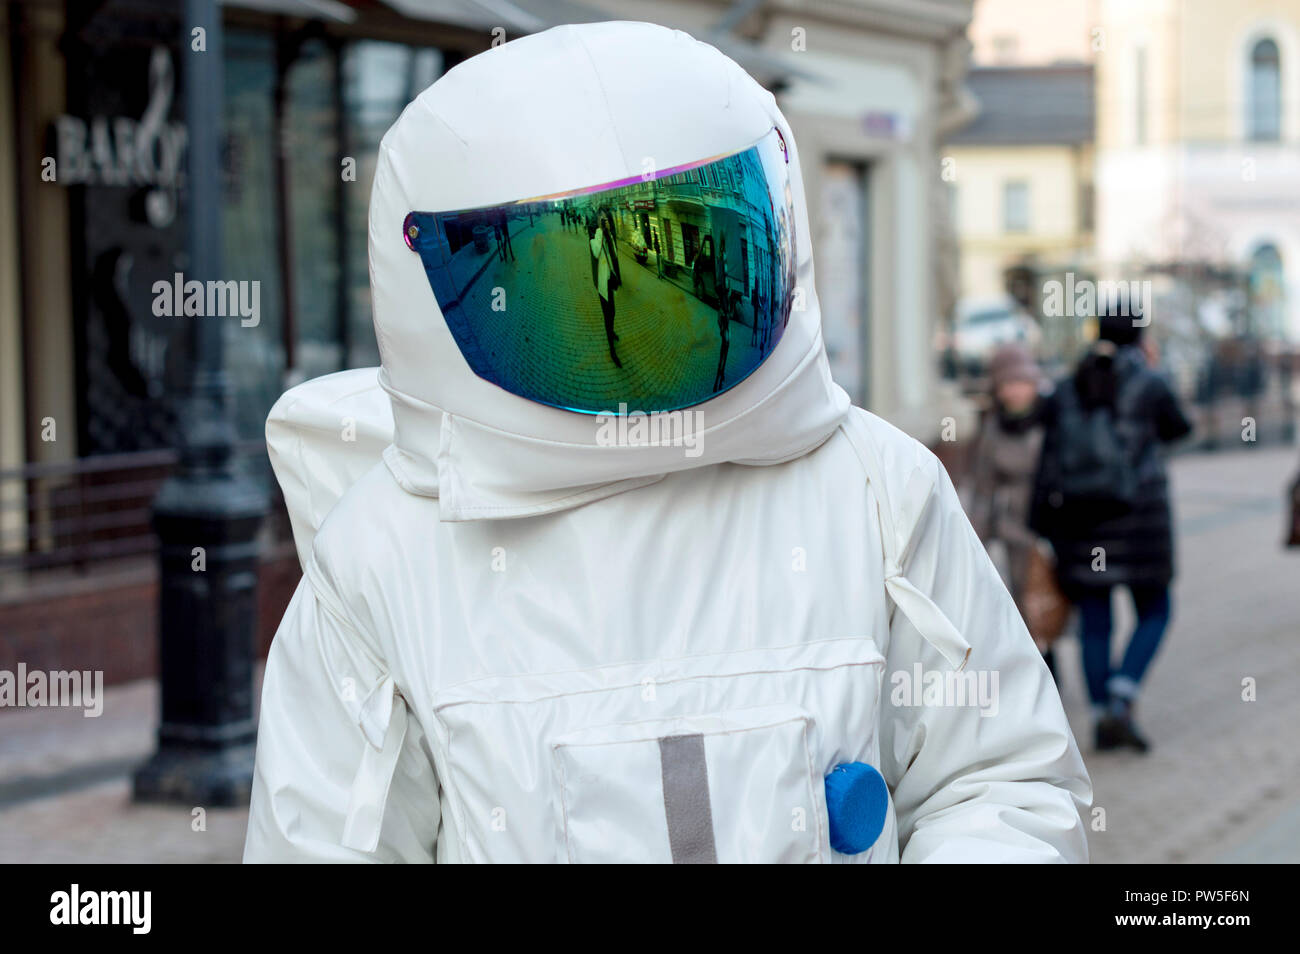 Nizhny Novgorod, Russie - 17 mars 2017 : un jeune homme en costume d'astronaute, distribution de tracts dans la rue . Banque D'Images